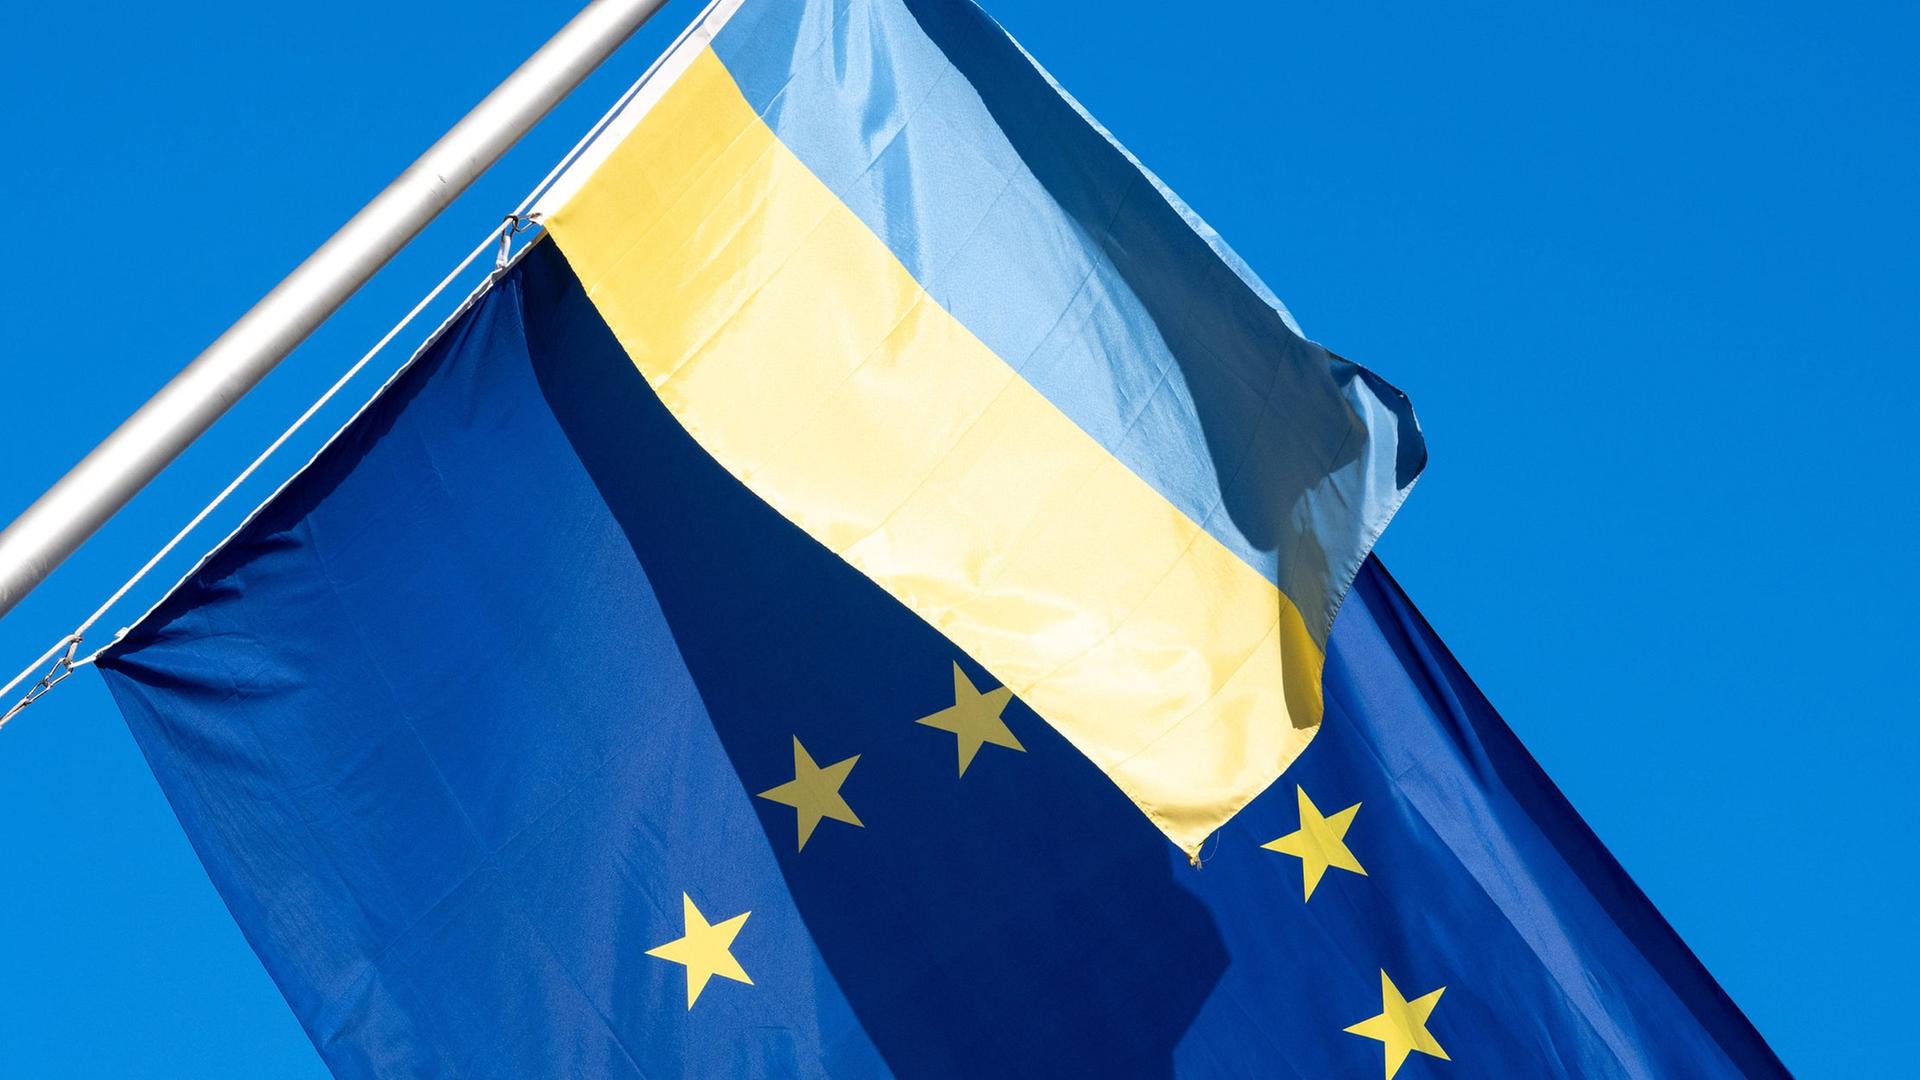 Die EU-Flagge weht zusammen mit einer ukrainischen Flagge vor blauem Himmel.